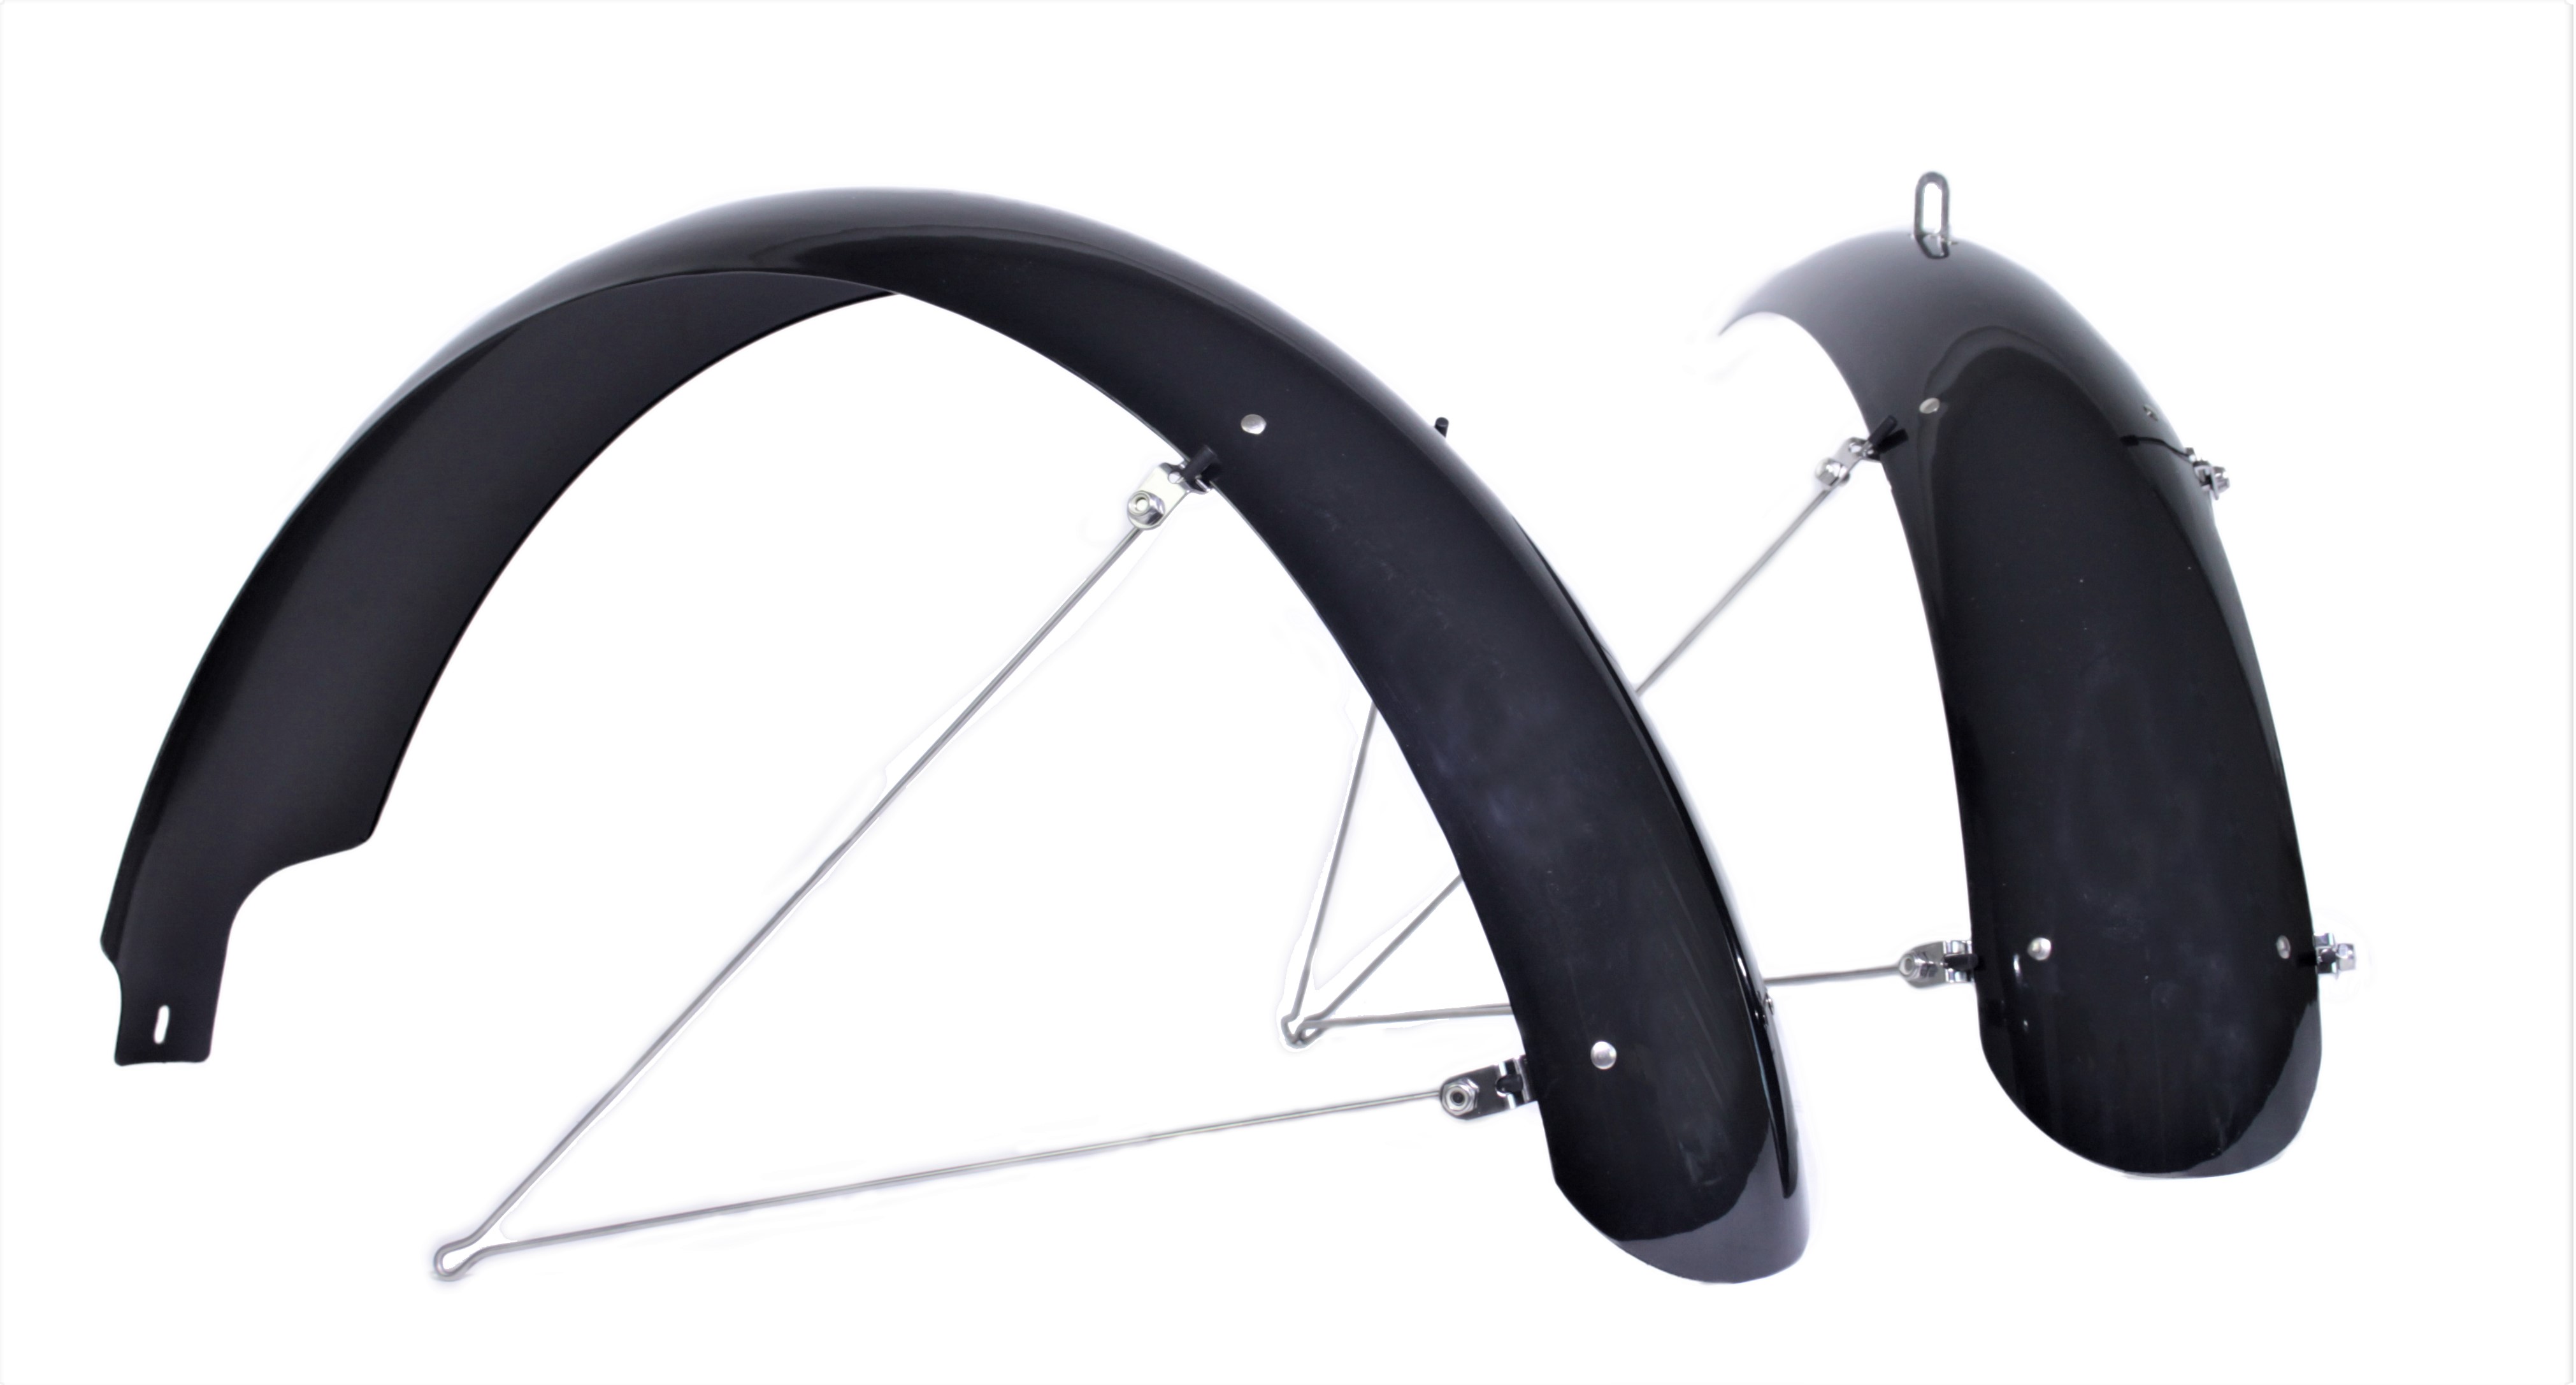 204 Parafanghi Fat Bike in materiale plastico con una larghezza di 124 mm, dotato di aste 20 x 4 - 4,8 pollici, in nero mate